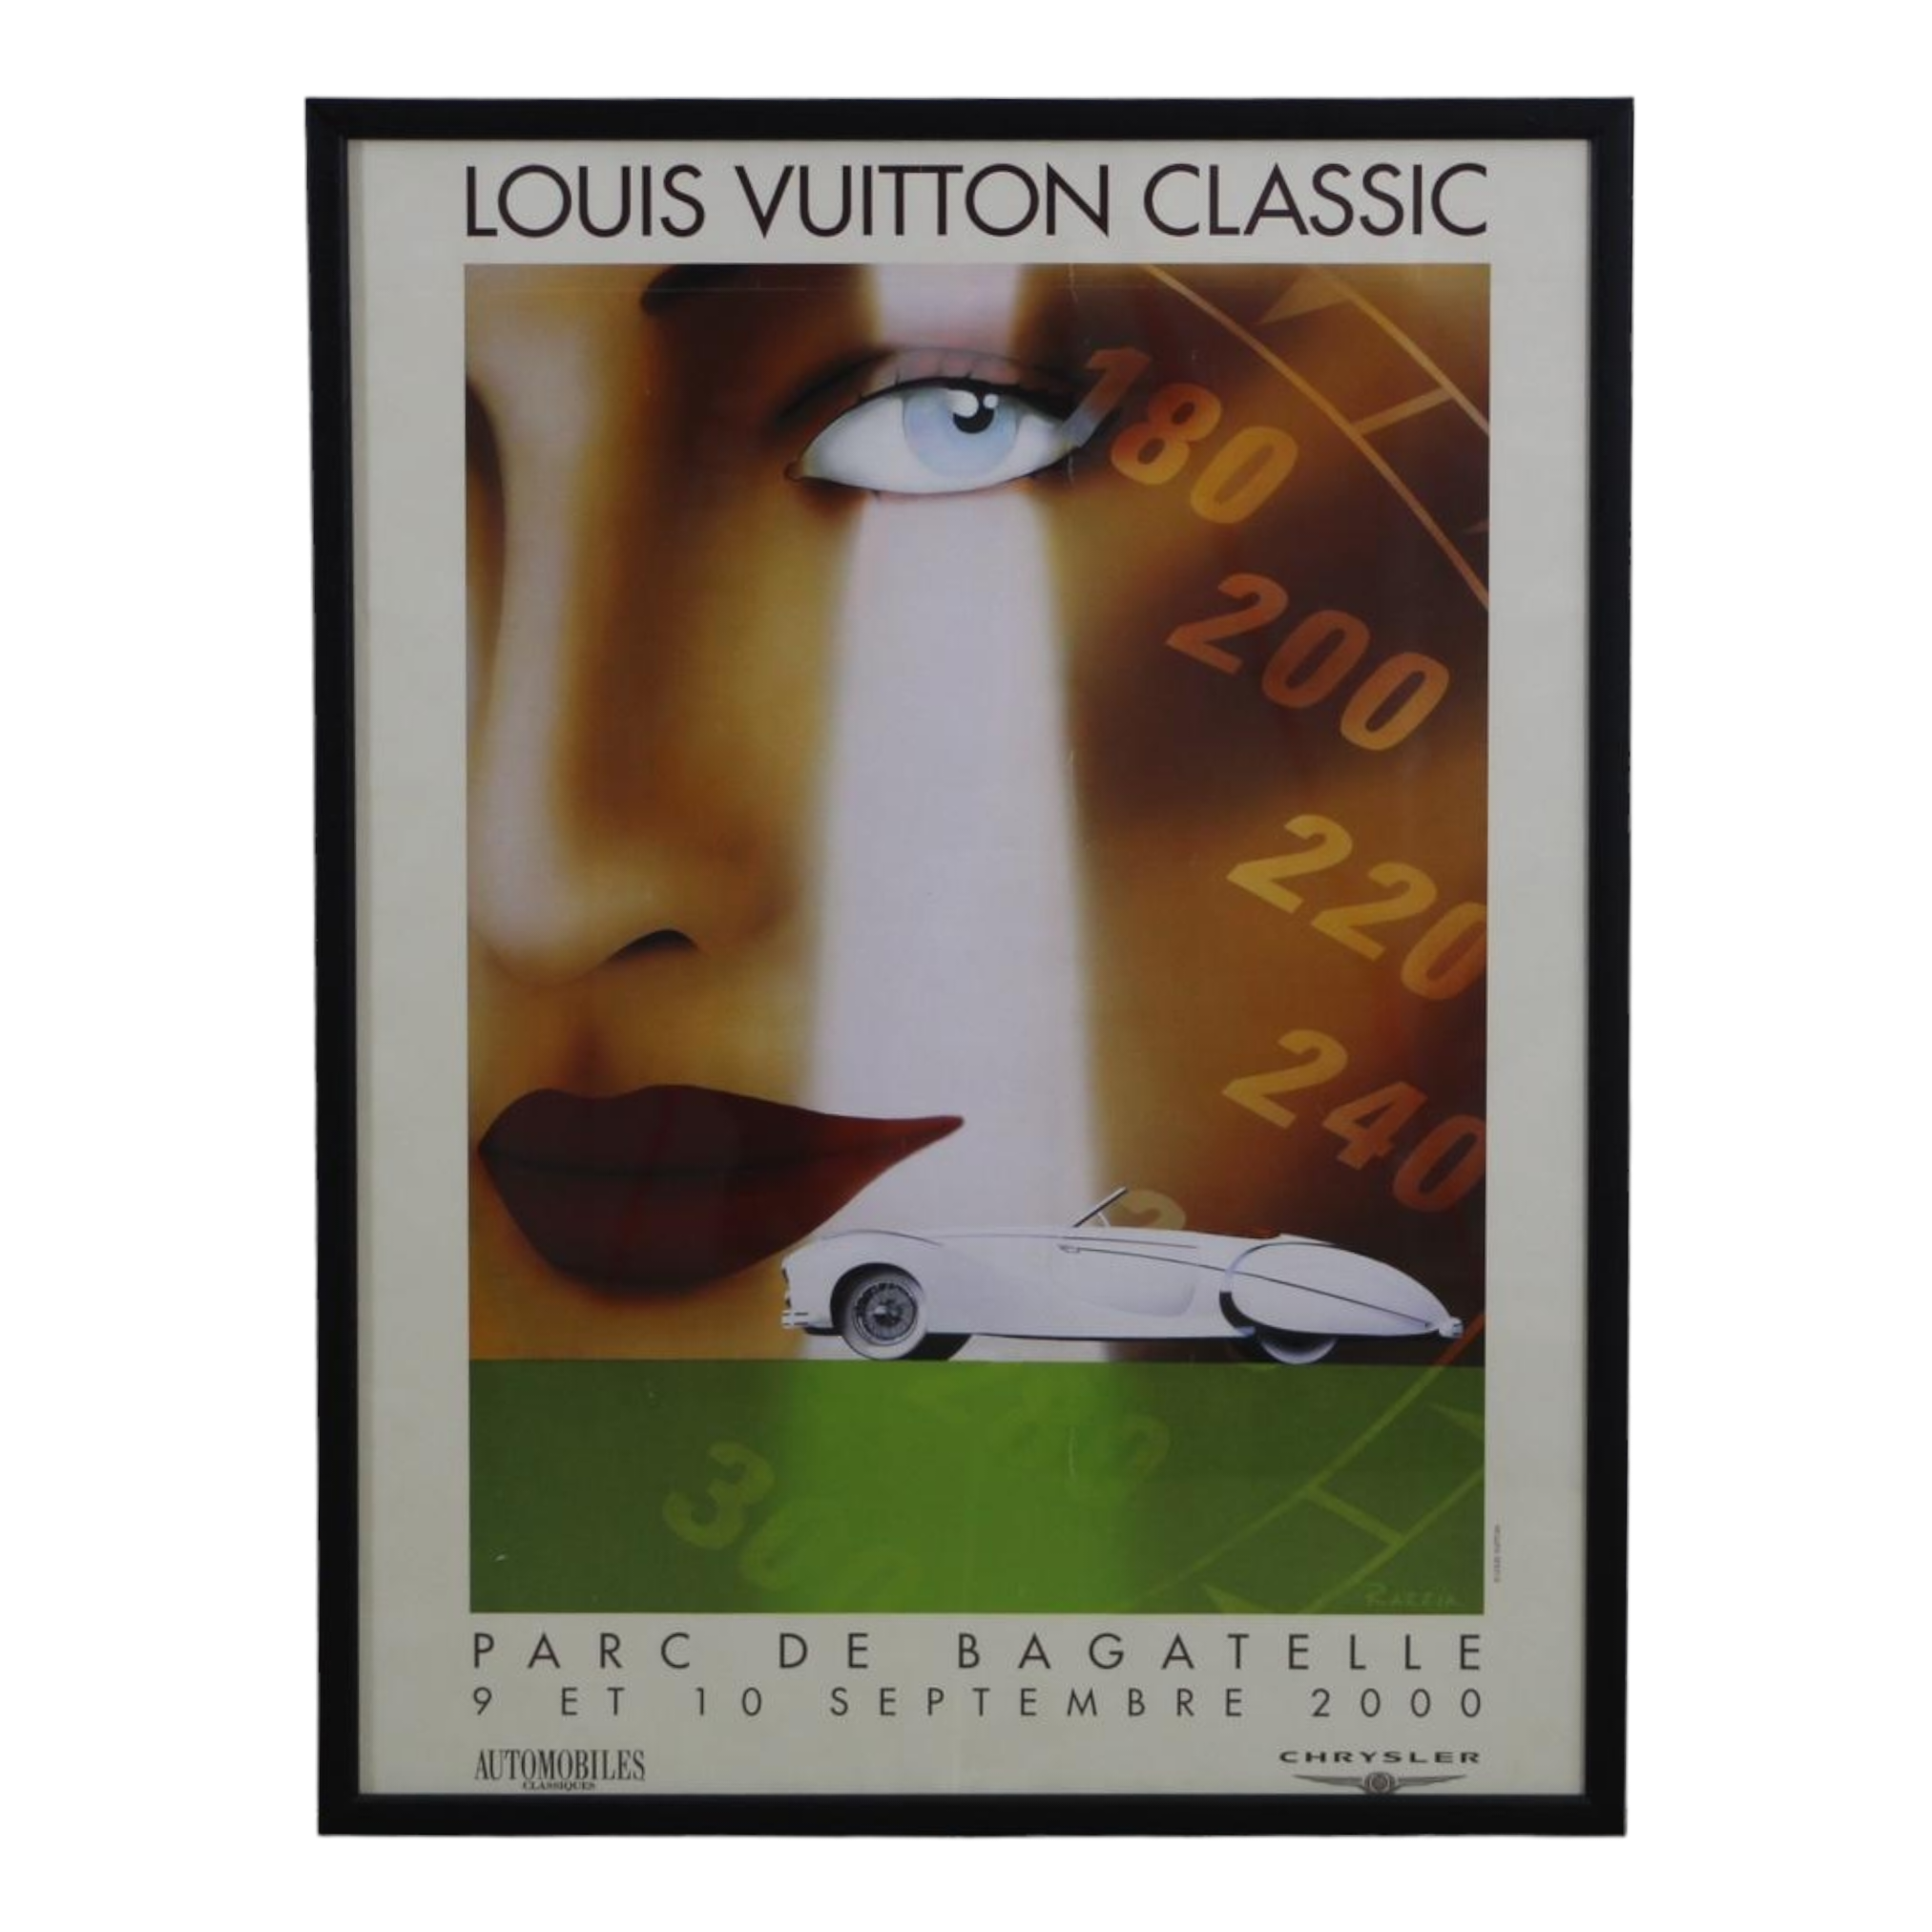 Louis Vuitton 2002 Bagatelle Concours d'Elégance poster by Razzia - l'art  et l'automobile